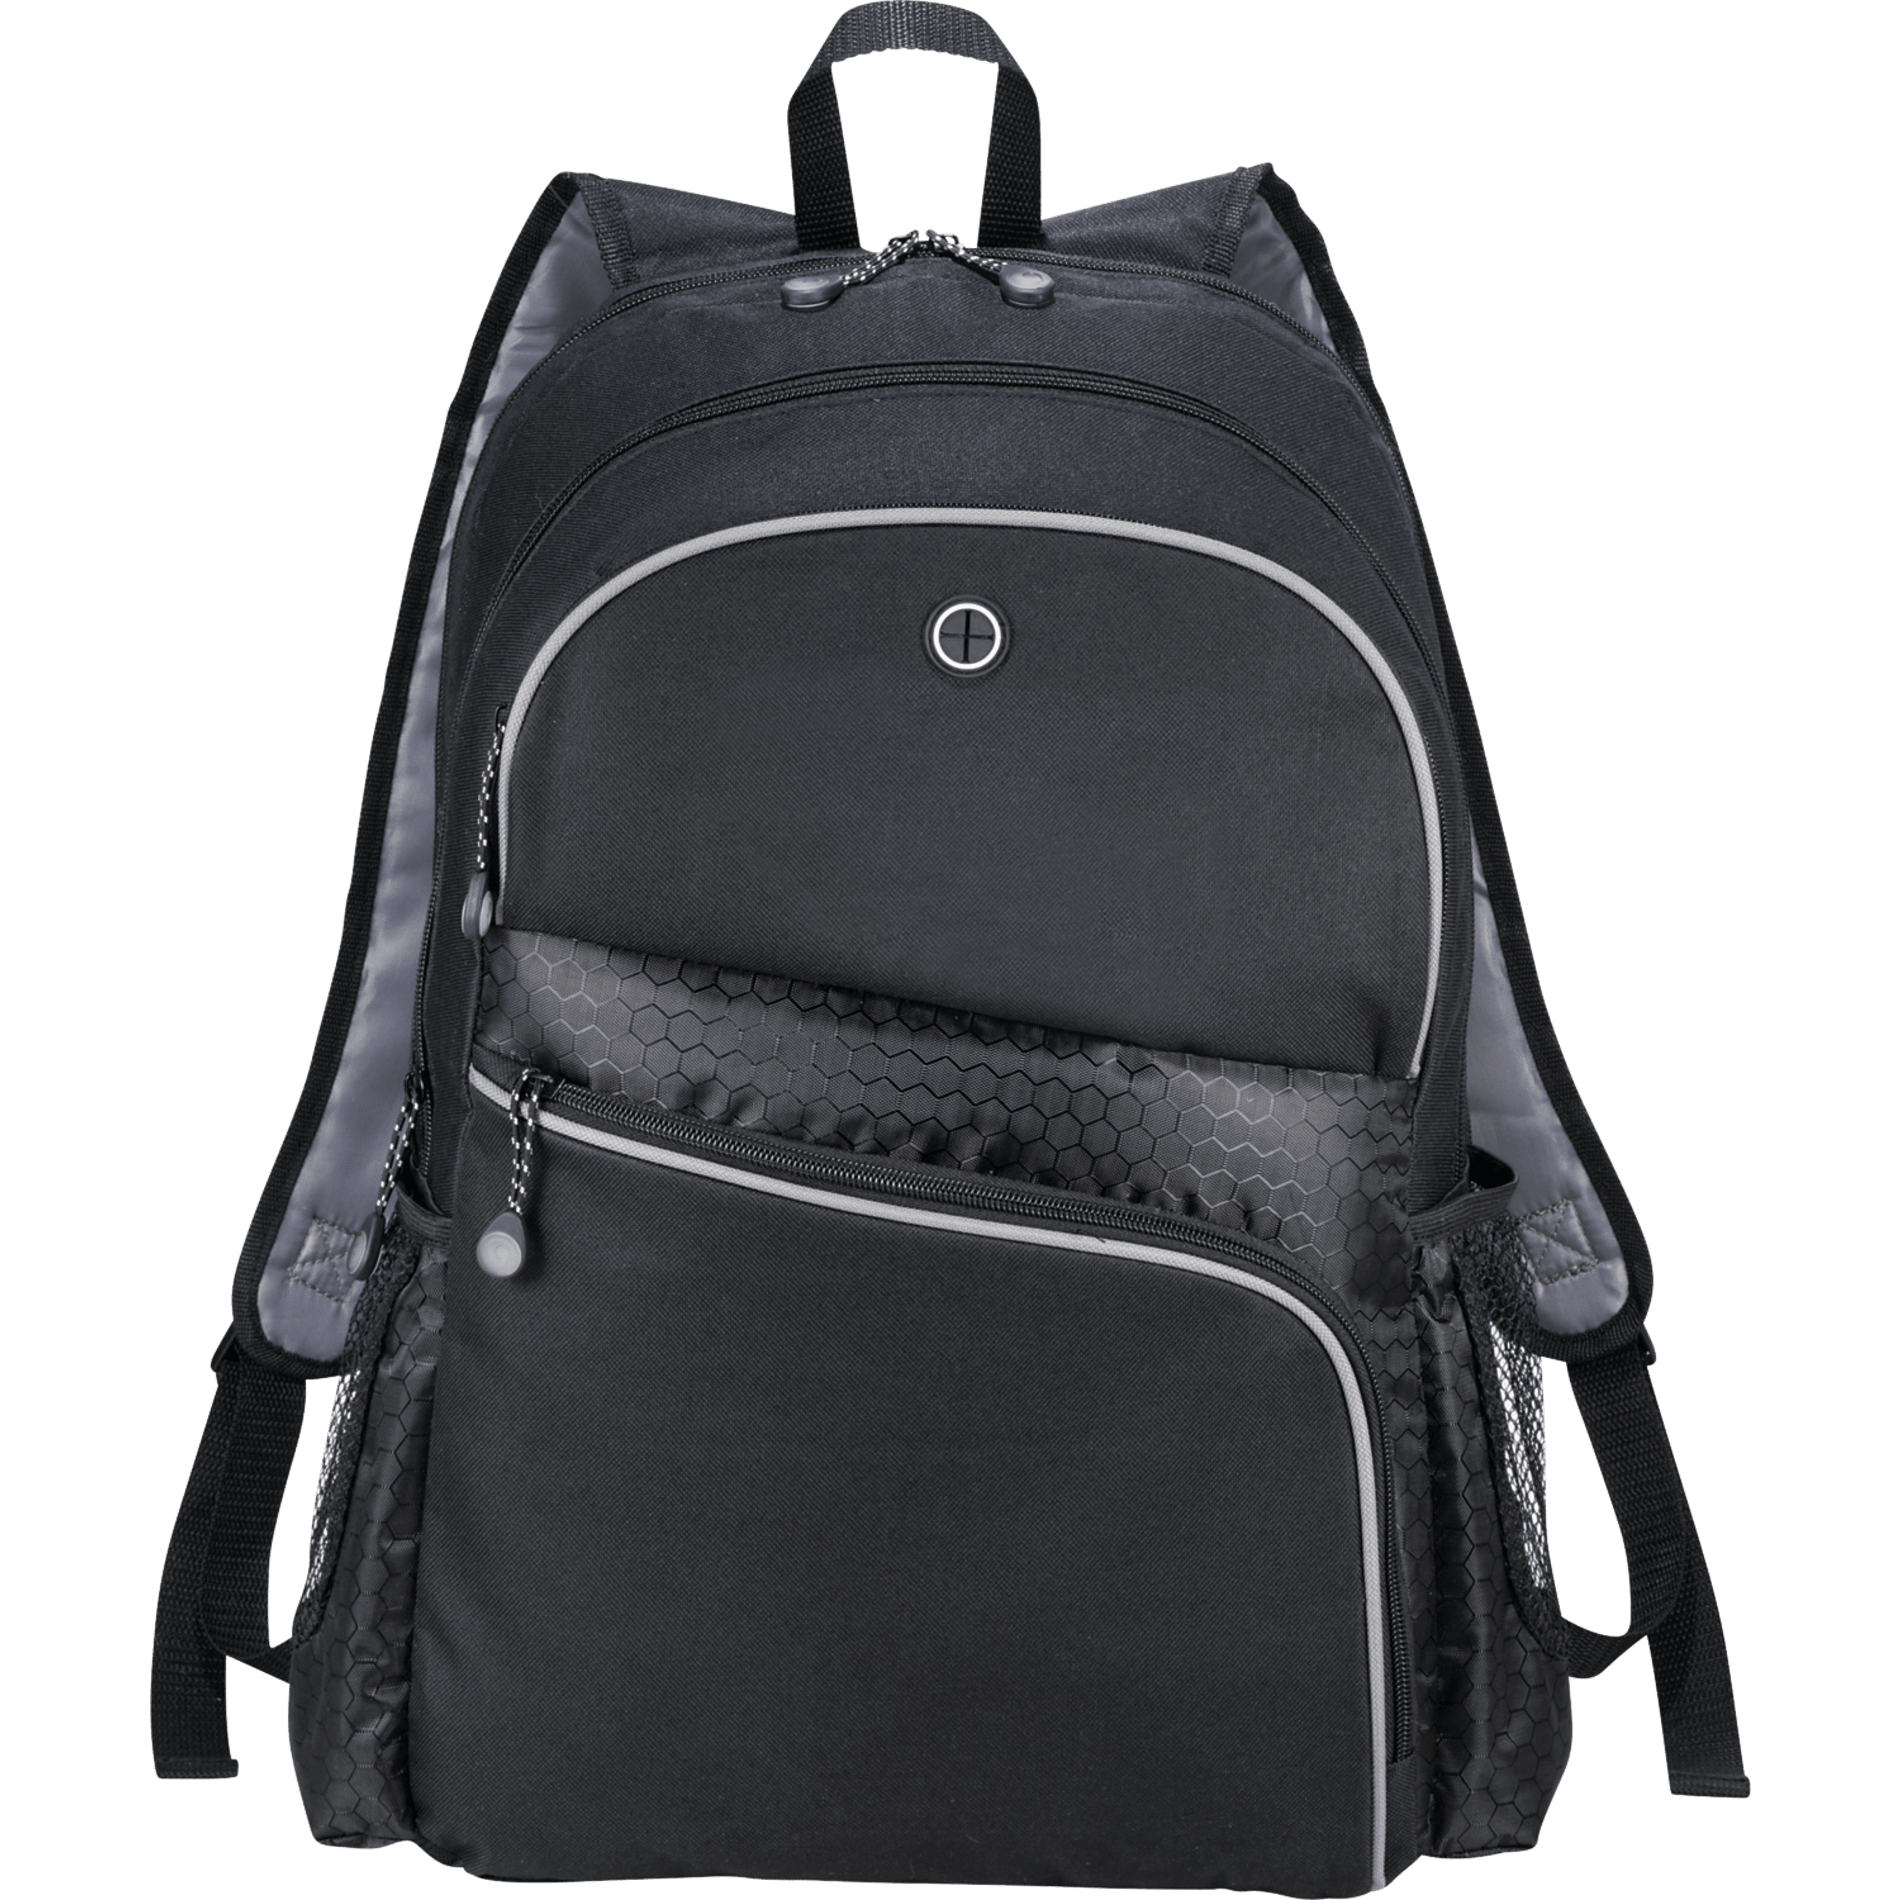 LEEDS 6440-15 - Hive TSA 17" Computer Backpack